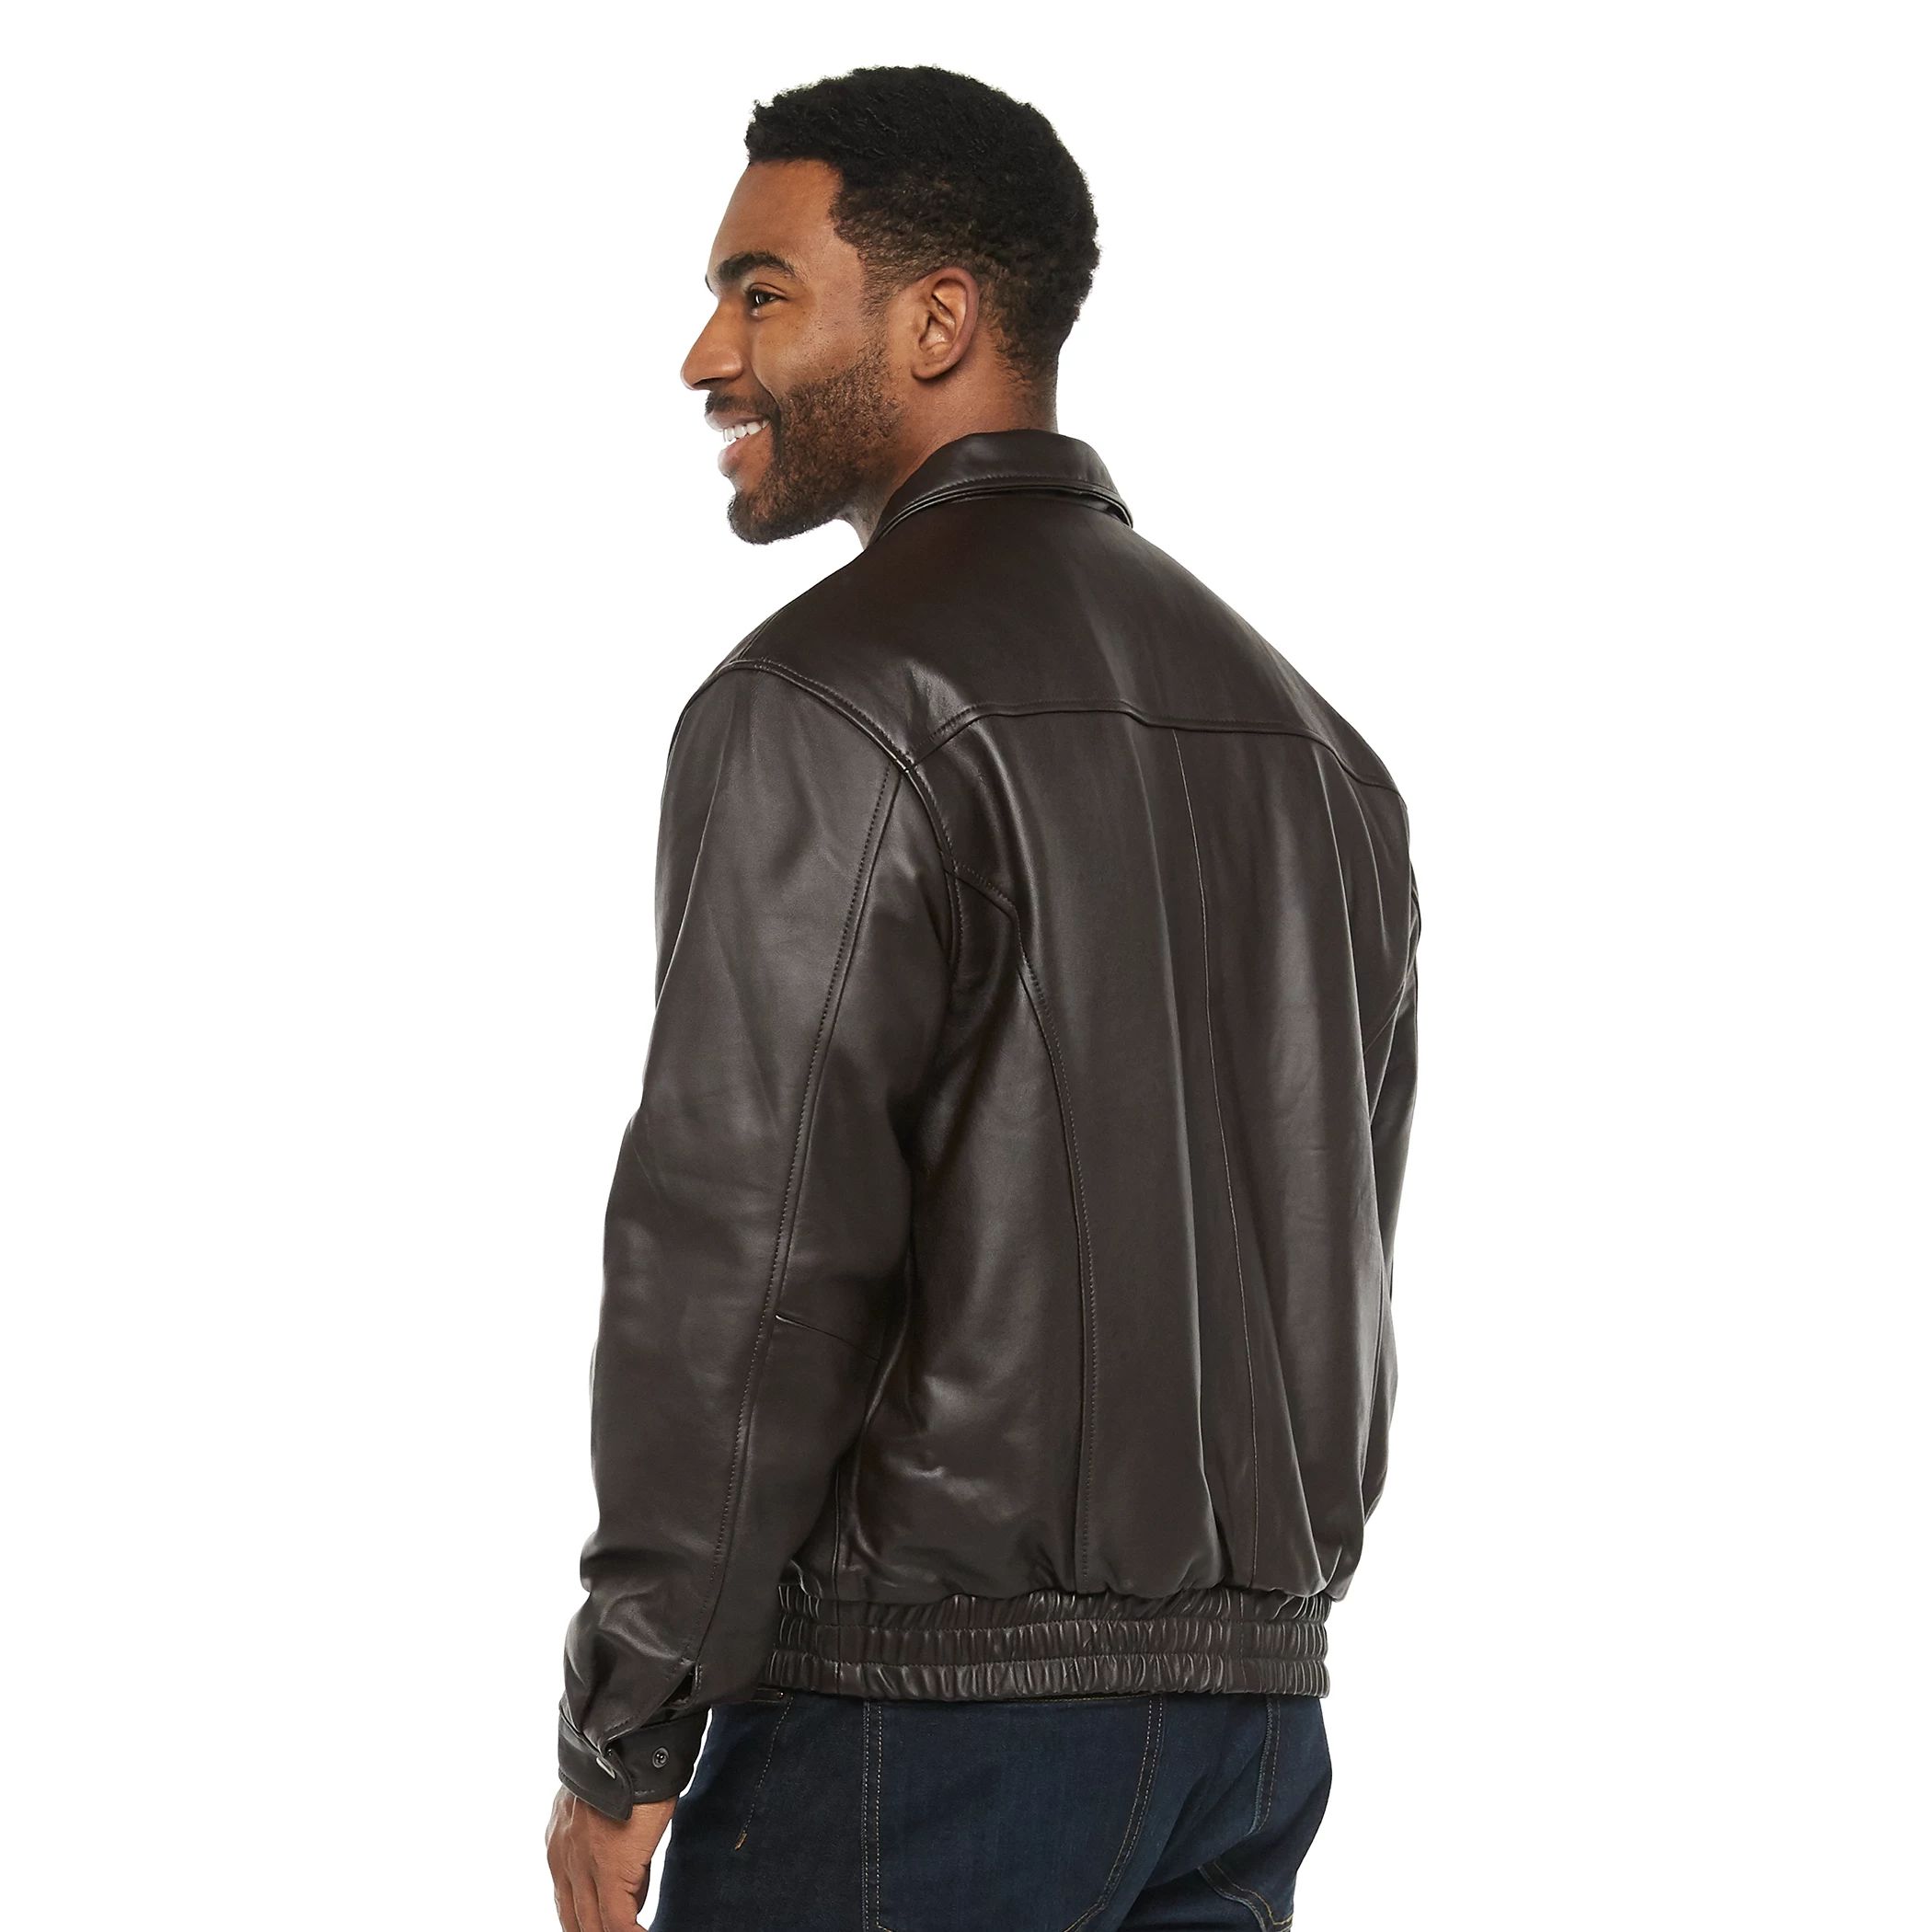 Мужская винтажная куртка с кожаной окантовкой внизу Vintage Leather, коричневый